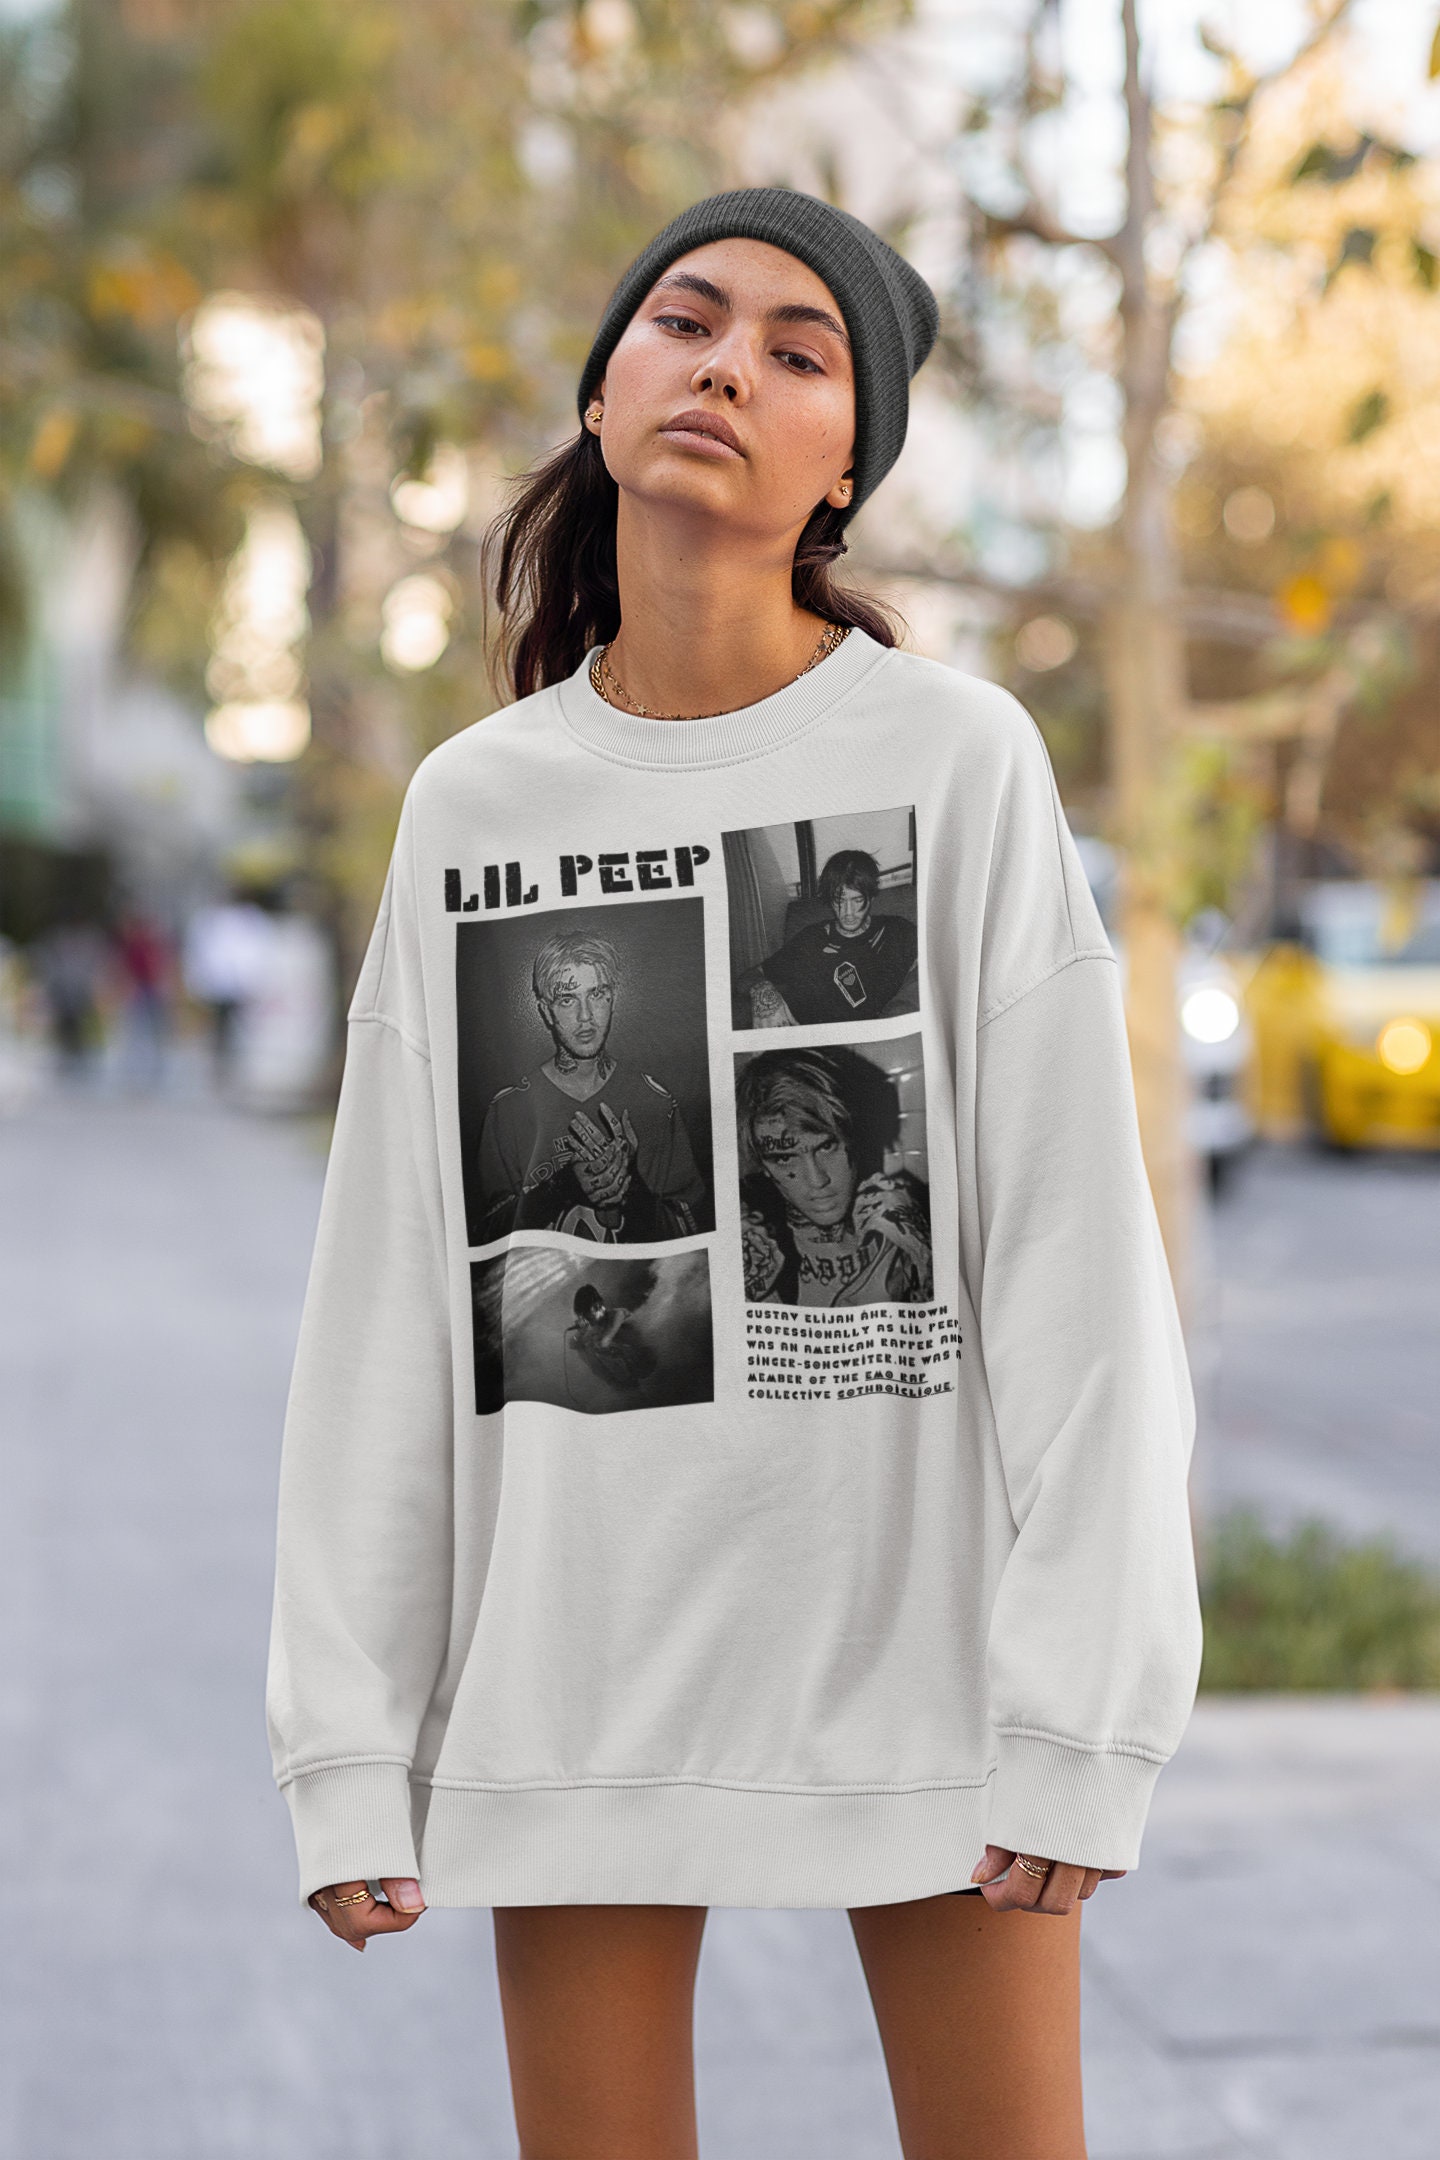 NEW] Lil Peep Sweater Lil Peep Merch